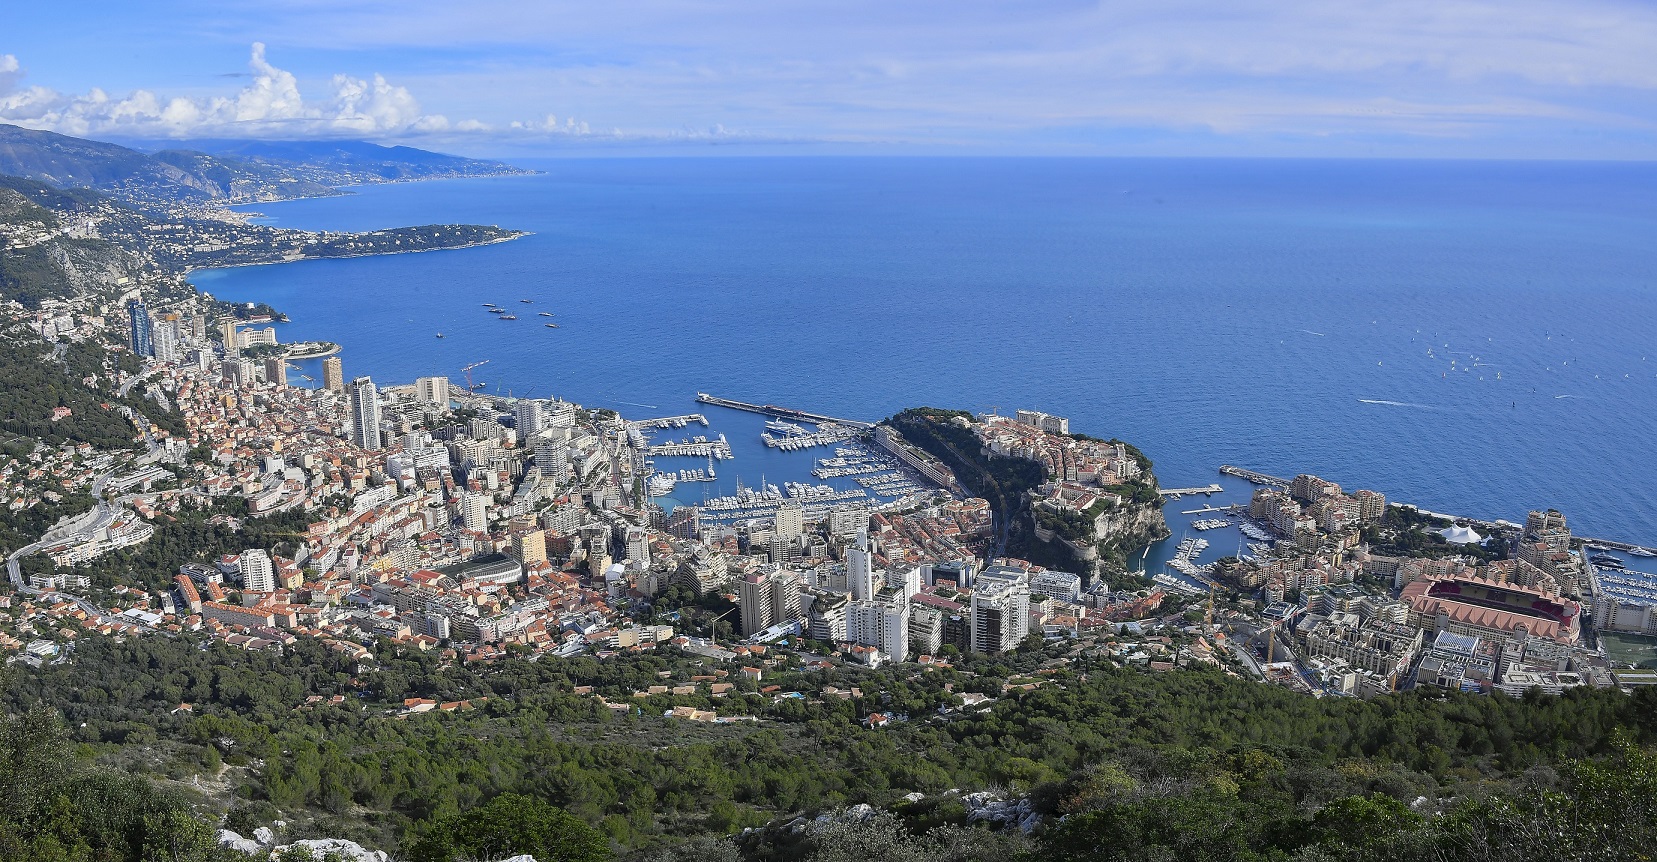 5ème cycle d’évaluation du GRECO - Un rapport qui accueille positivement les mesures déjà prises par Monaco dans la lutte contre la corruption et l’invite à poursuivre ses efforts